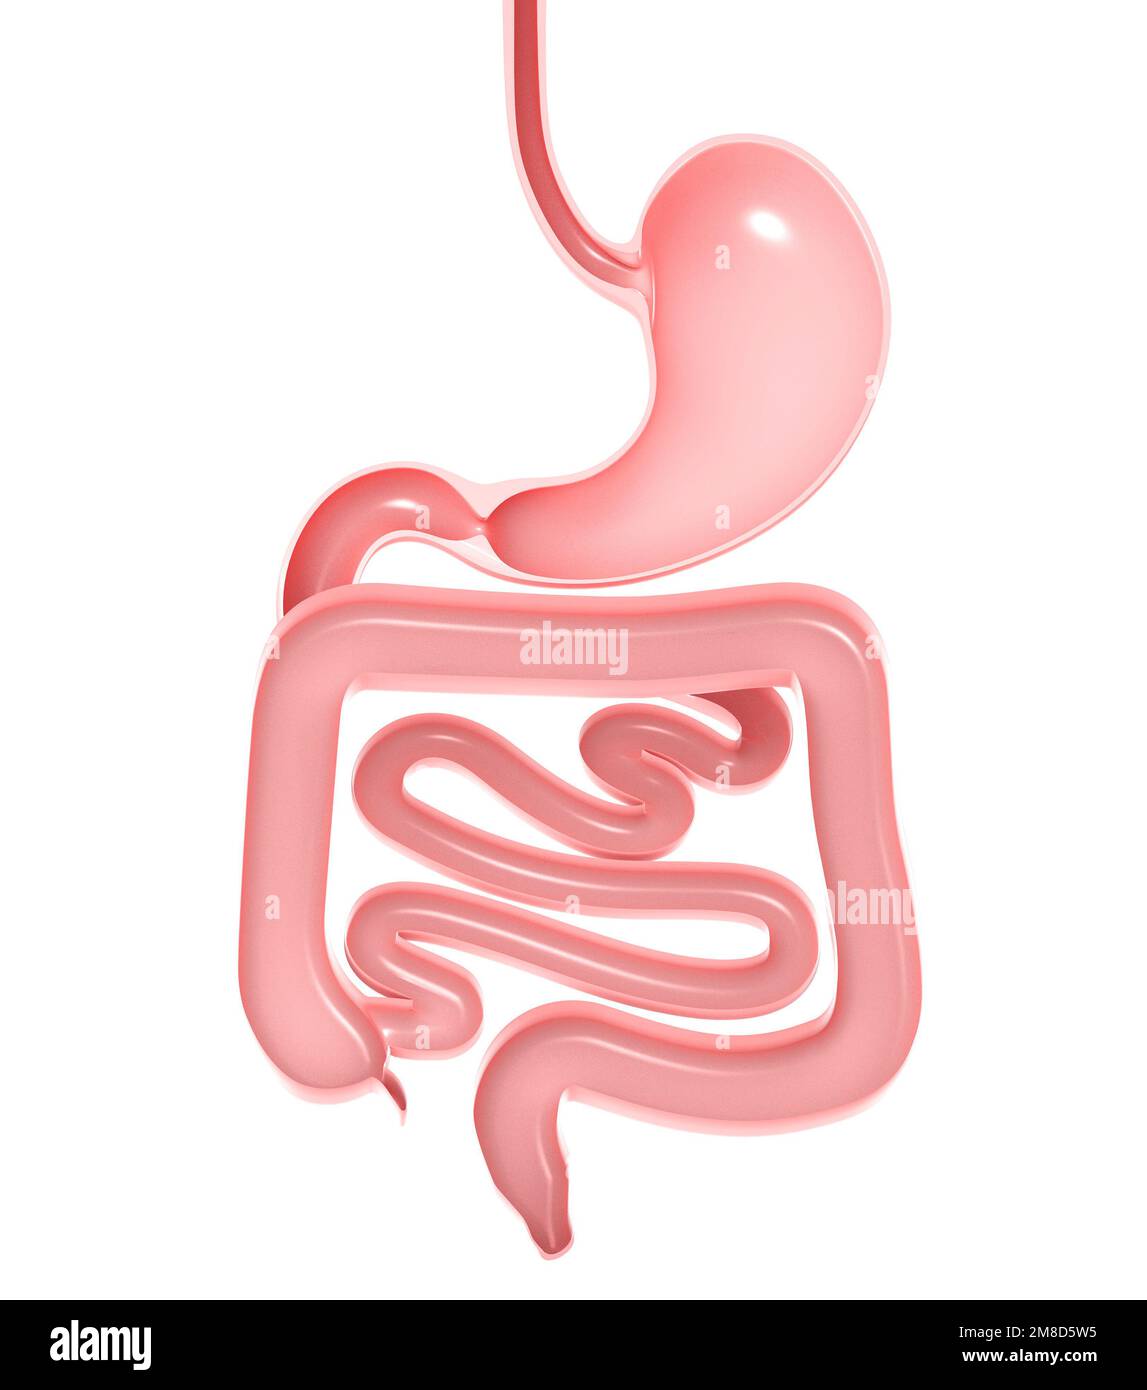 Illustration anatomique 3D du système digestif, de l'estomac, du gros intestin et du petit intestin. Découpe de la vue avant avec découpe aux couleurs naturelles. Banque D'Images